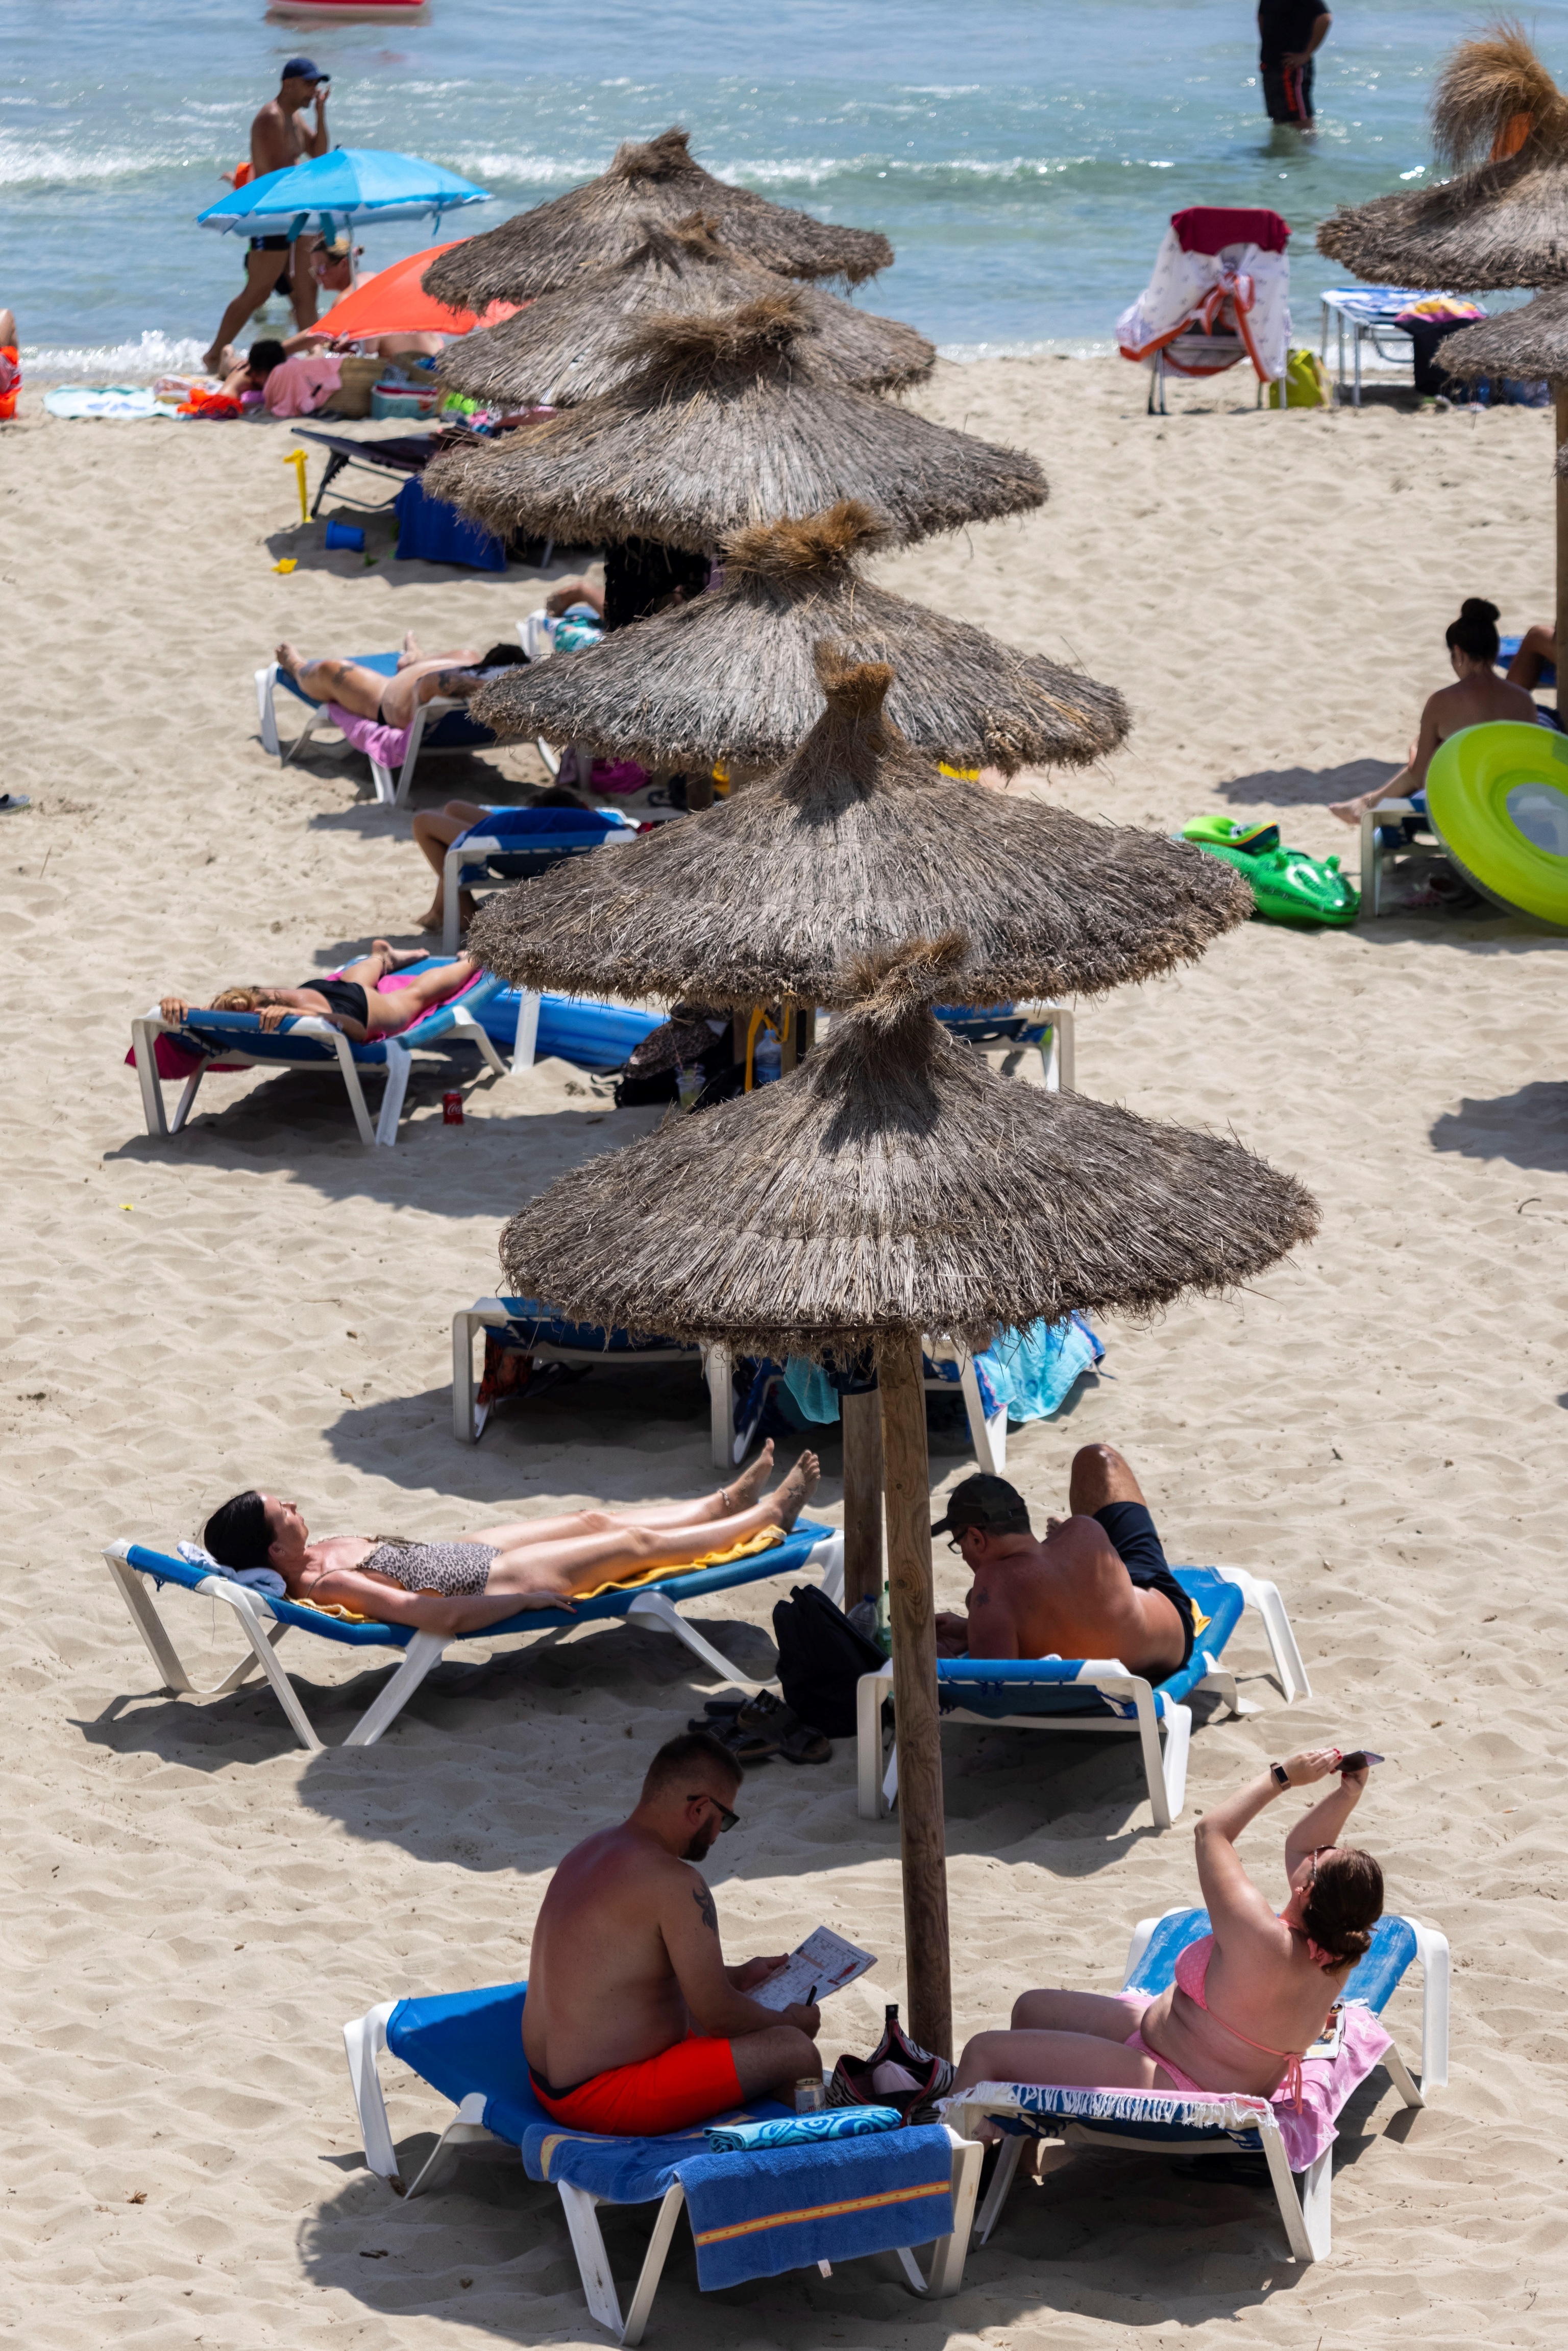 Turistas disfrutan del sol en la playa de Peguera, este jueves en el municipio mallorquín de Calvià